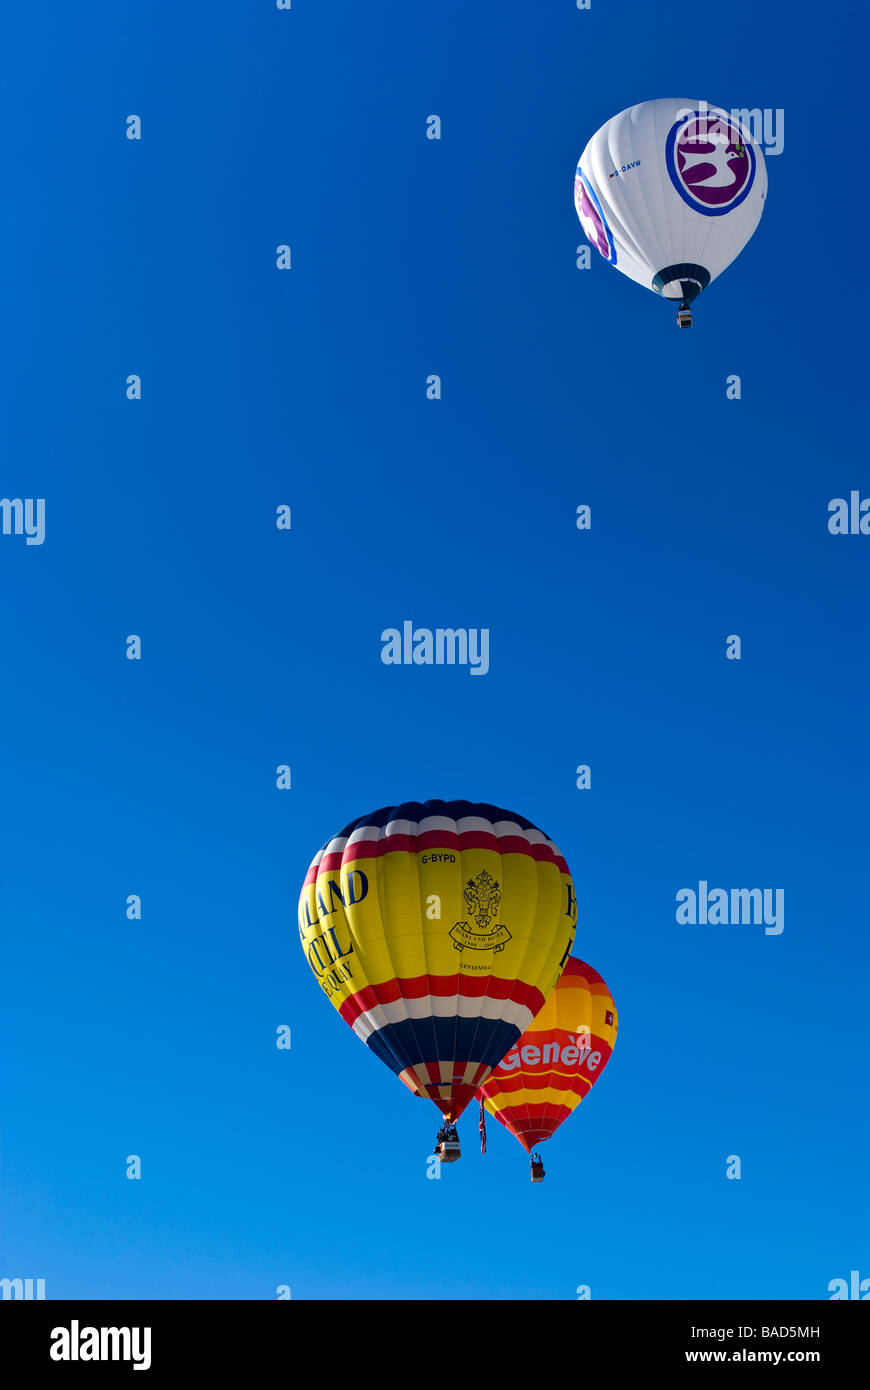 Heißluftballons steigen in den klaren blauen Himmel beim Chateau d ' Oex Internationale Ballonfestival 2009 / Rennen. Stockfoto